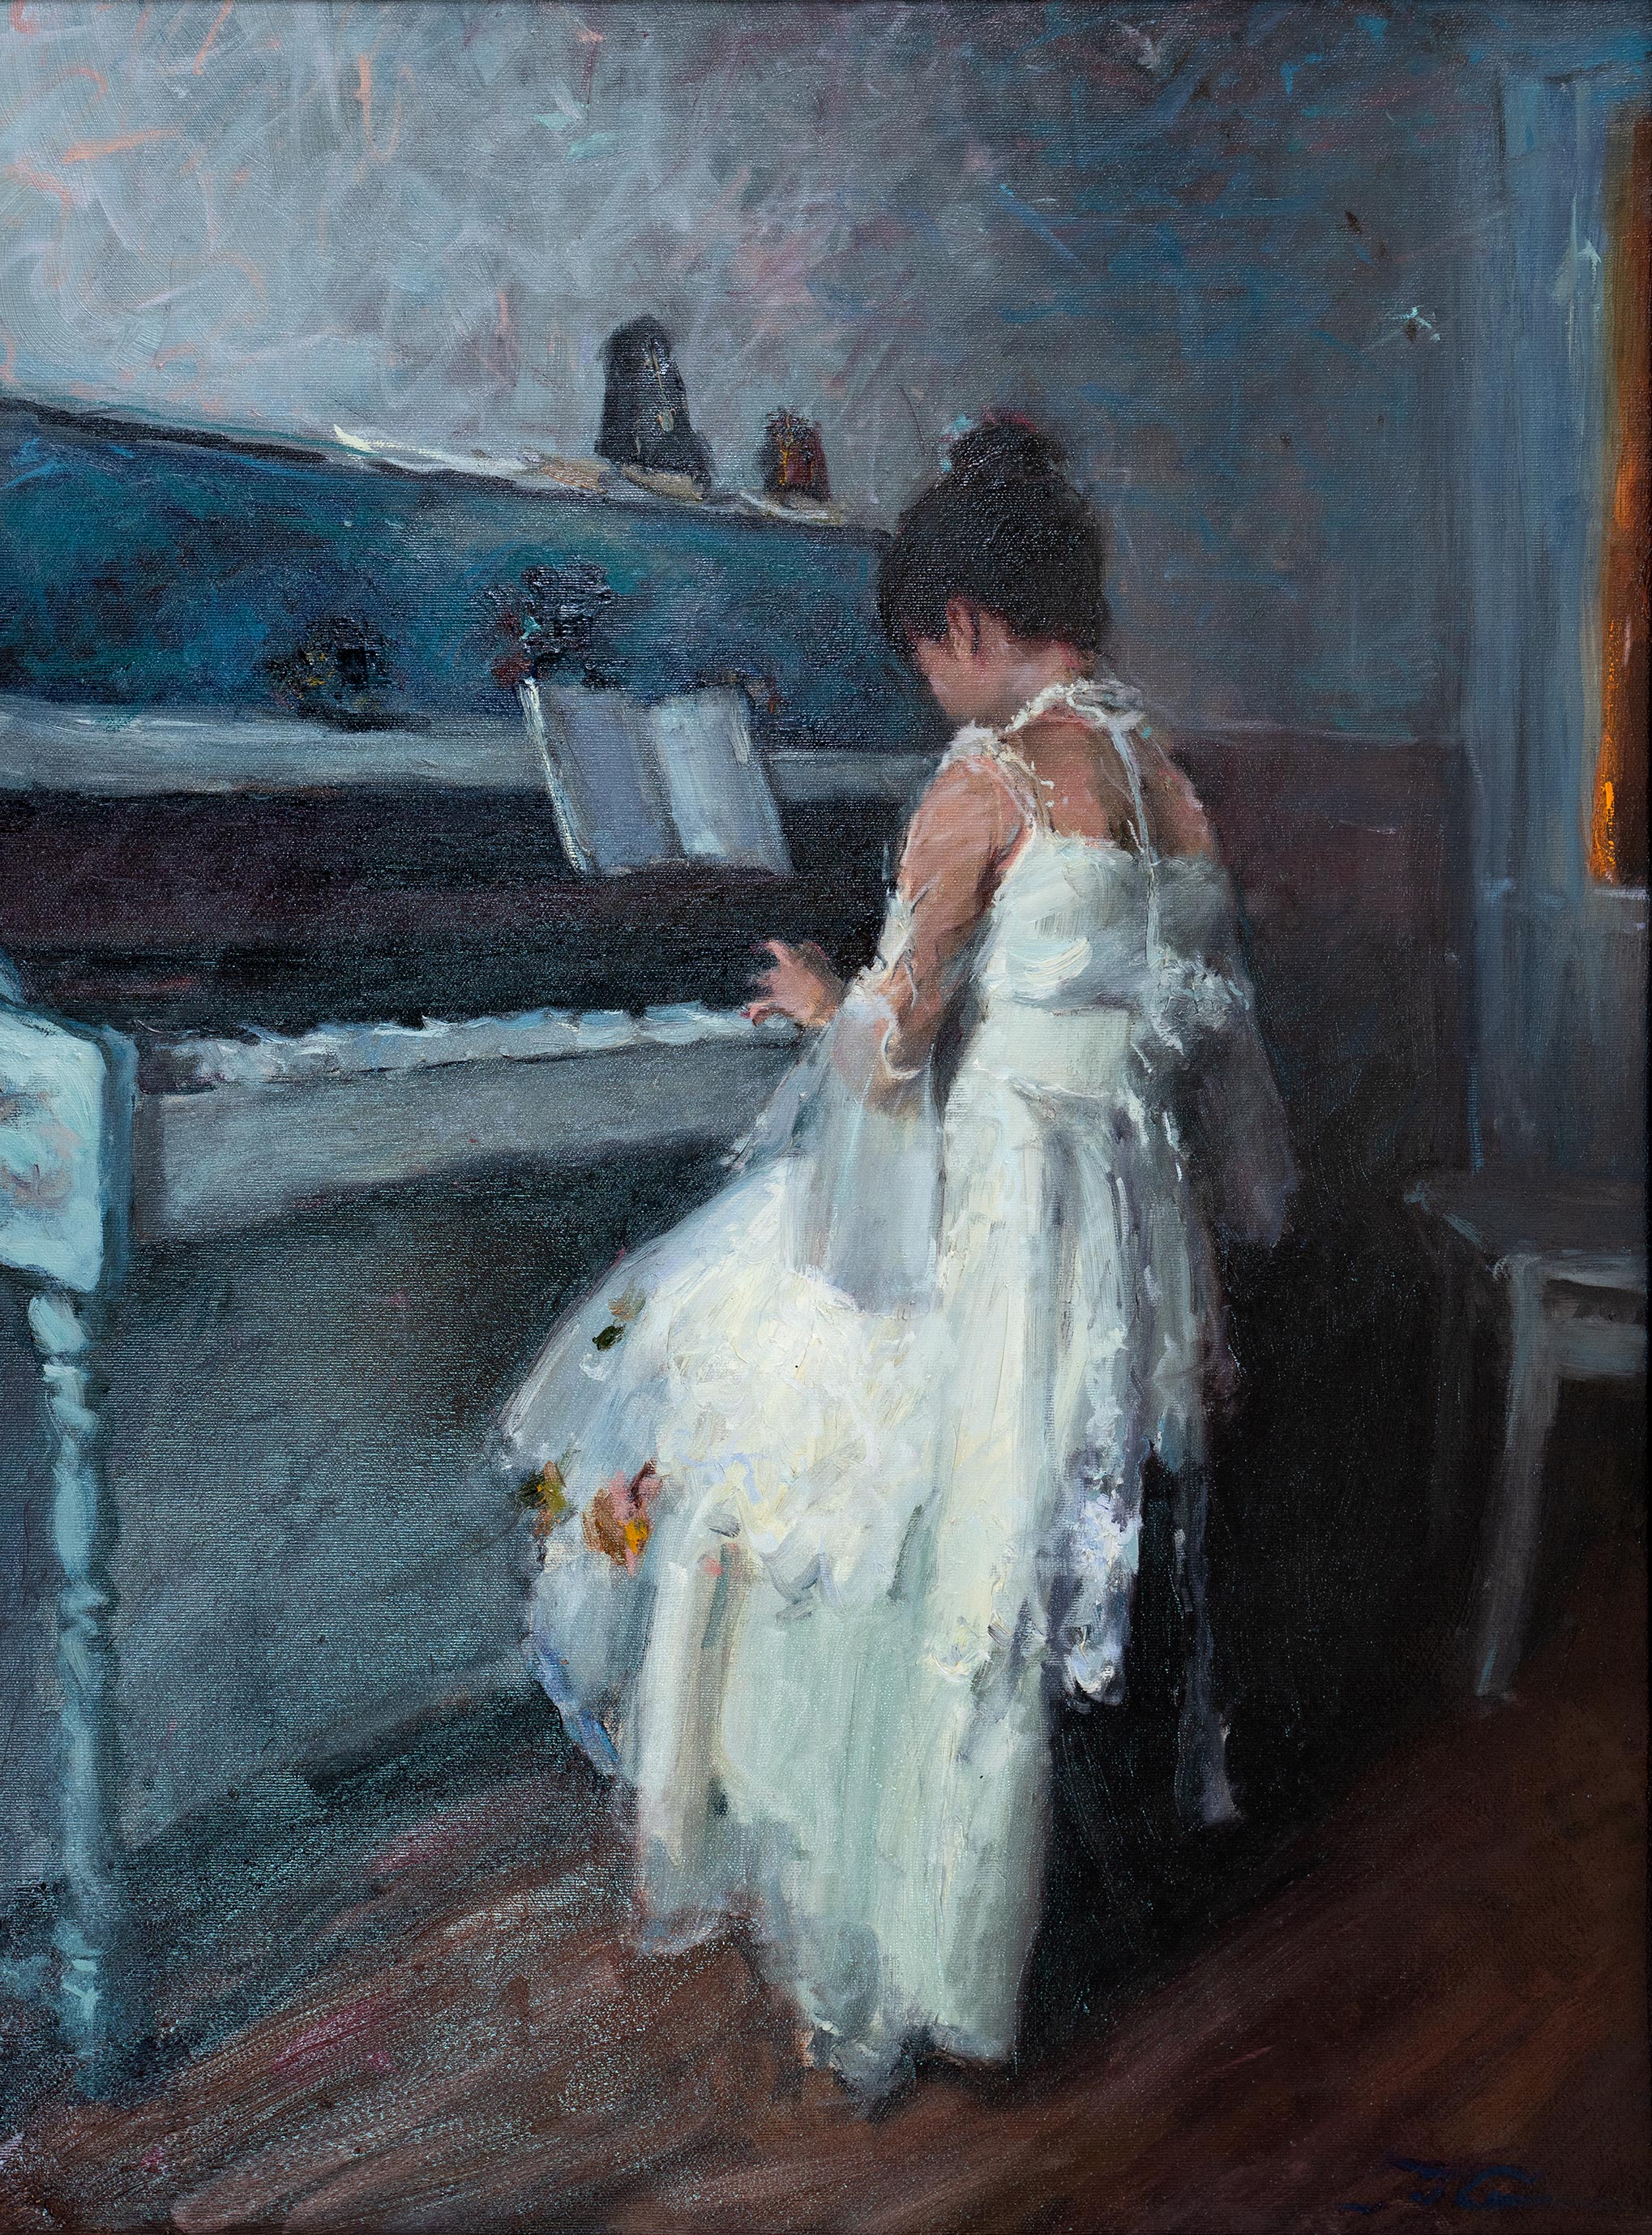 Piano - 1, Sergei Prokhorov, Buy the painting Oil